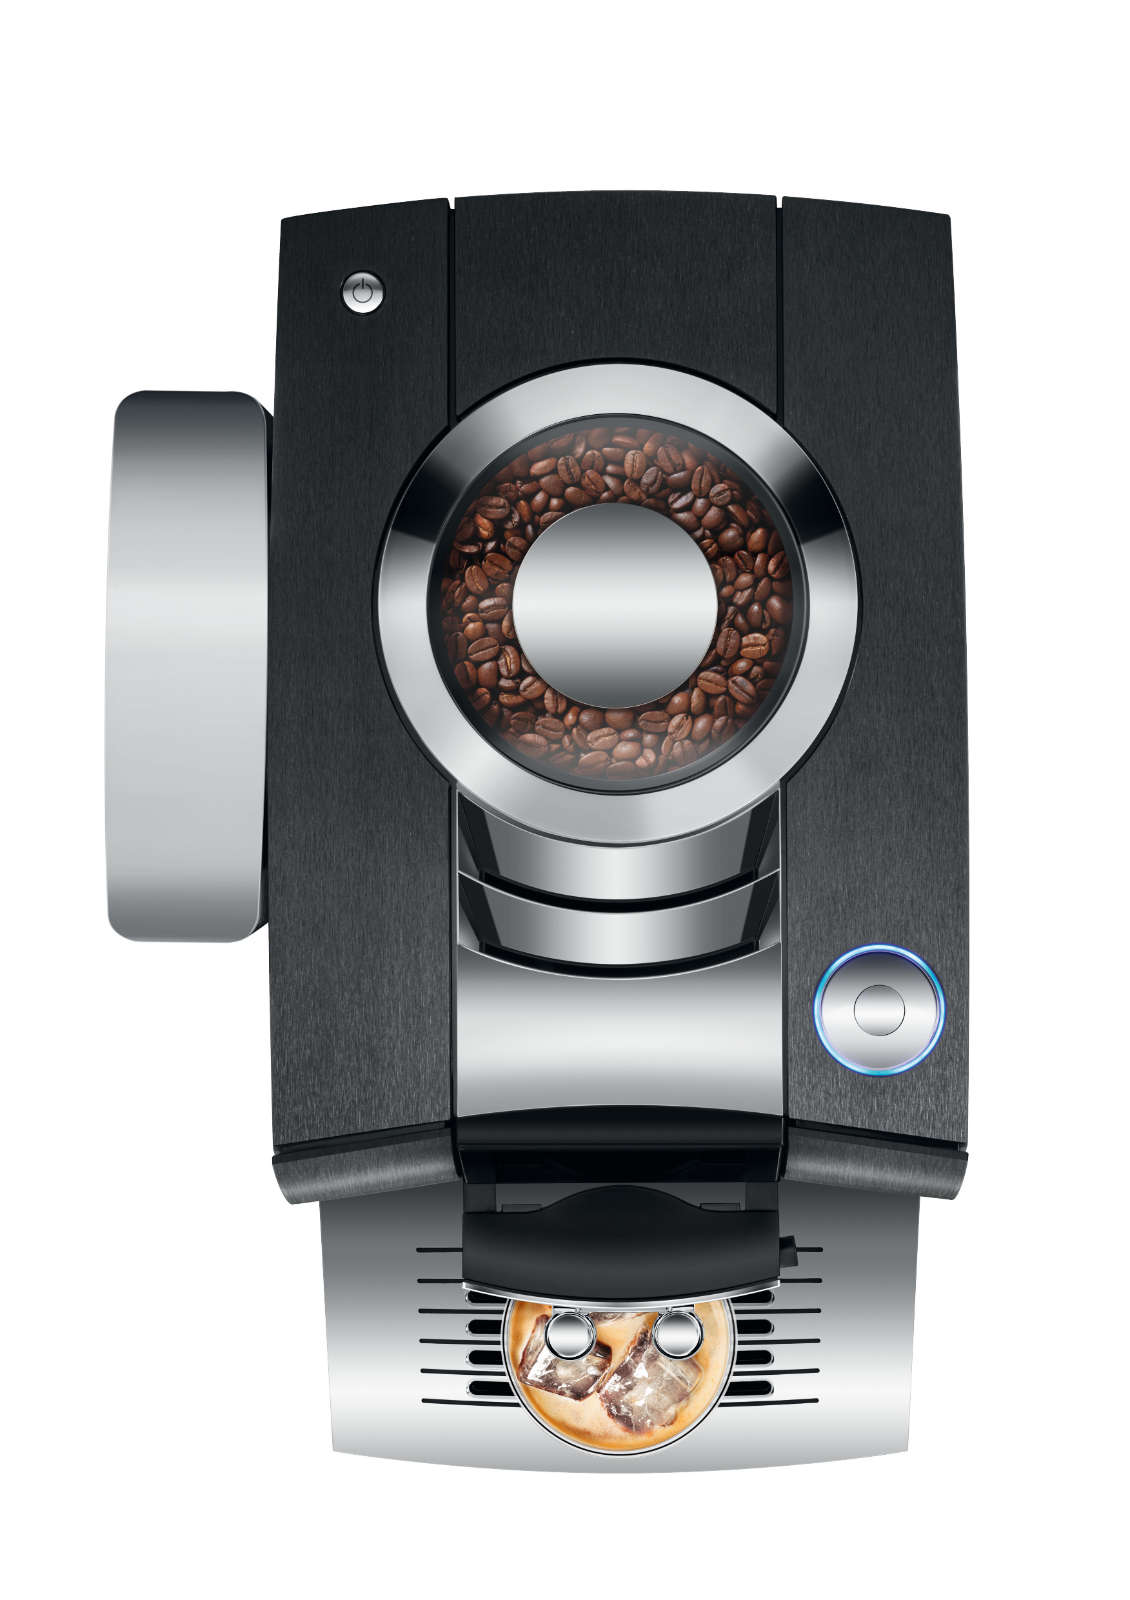 Der Jura Kaffeevollautomat Z10 bereitet auf Knopfdruck die gesamte Palette heißer Kaffees zu. Mehr noch: Zusätzlich kommen erstmals der Cold Brew Process sowie die 3D-Brühtechnologie zum Einsatz.